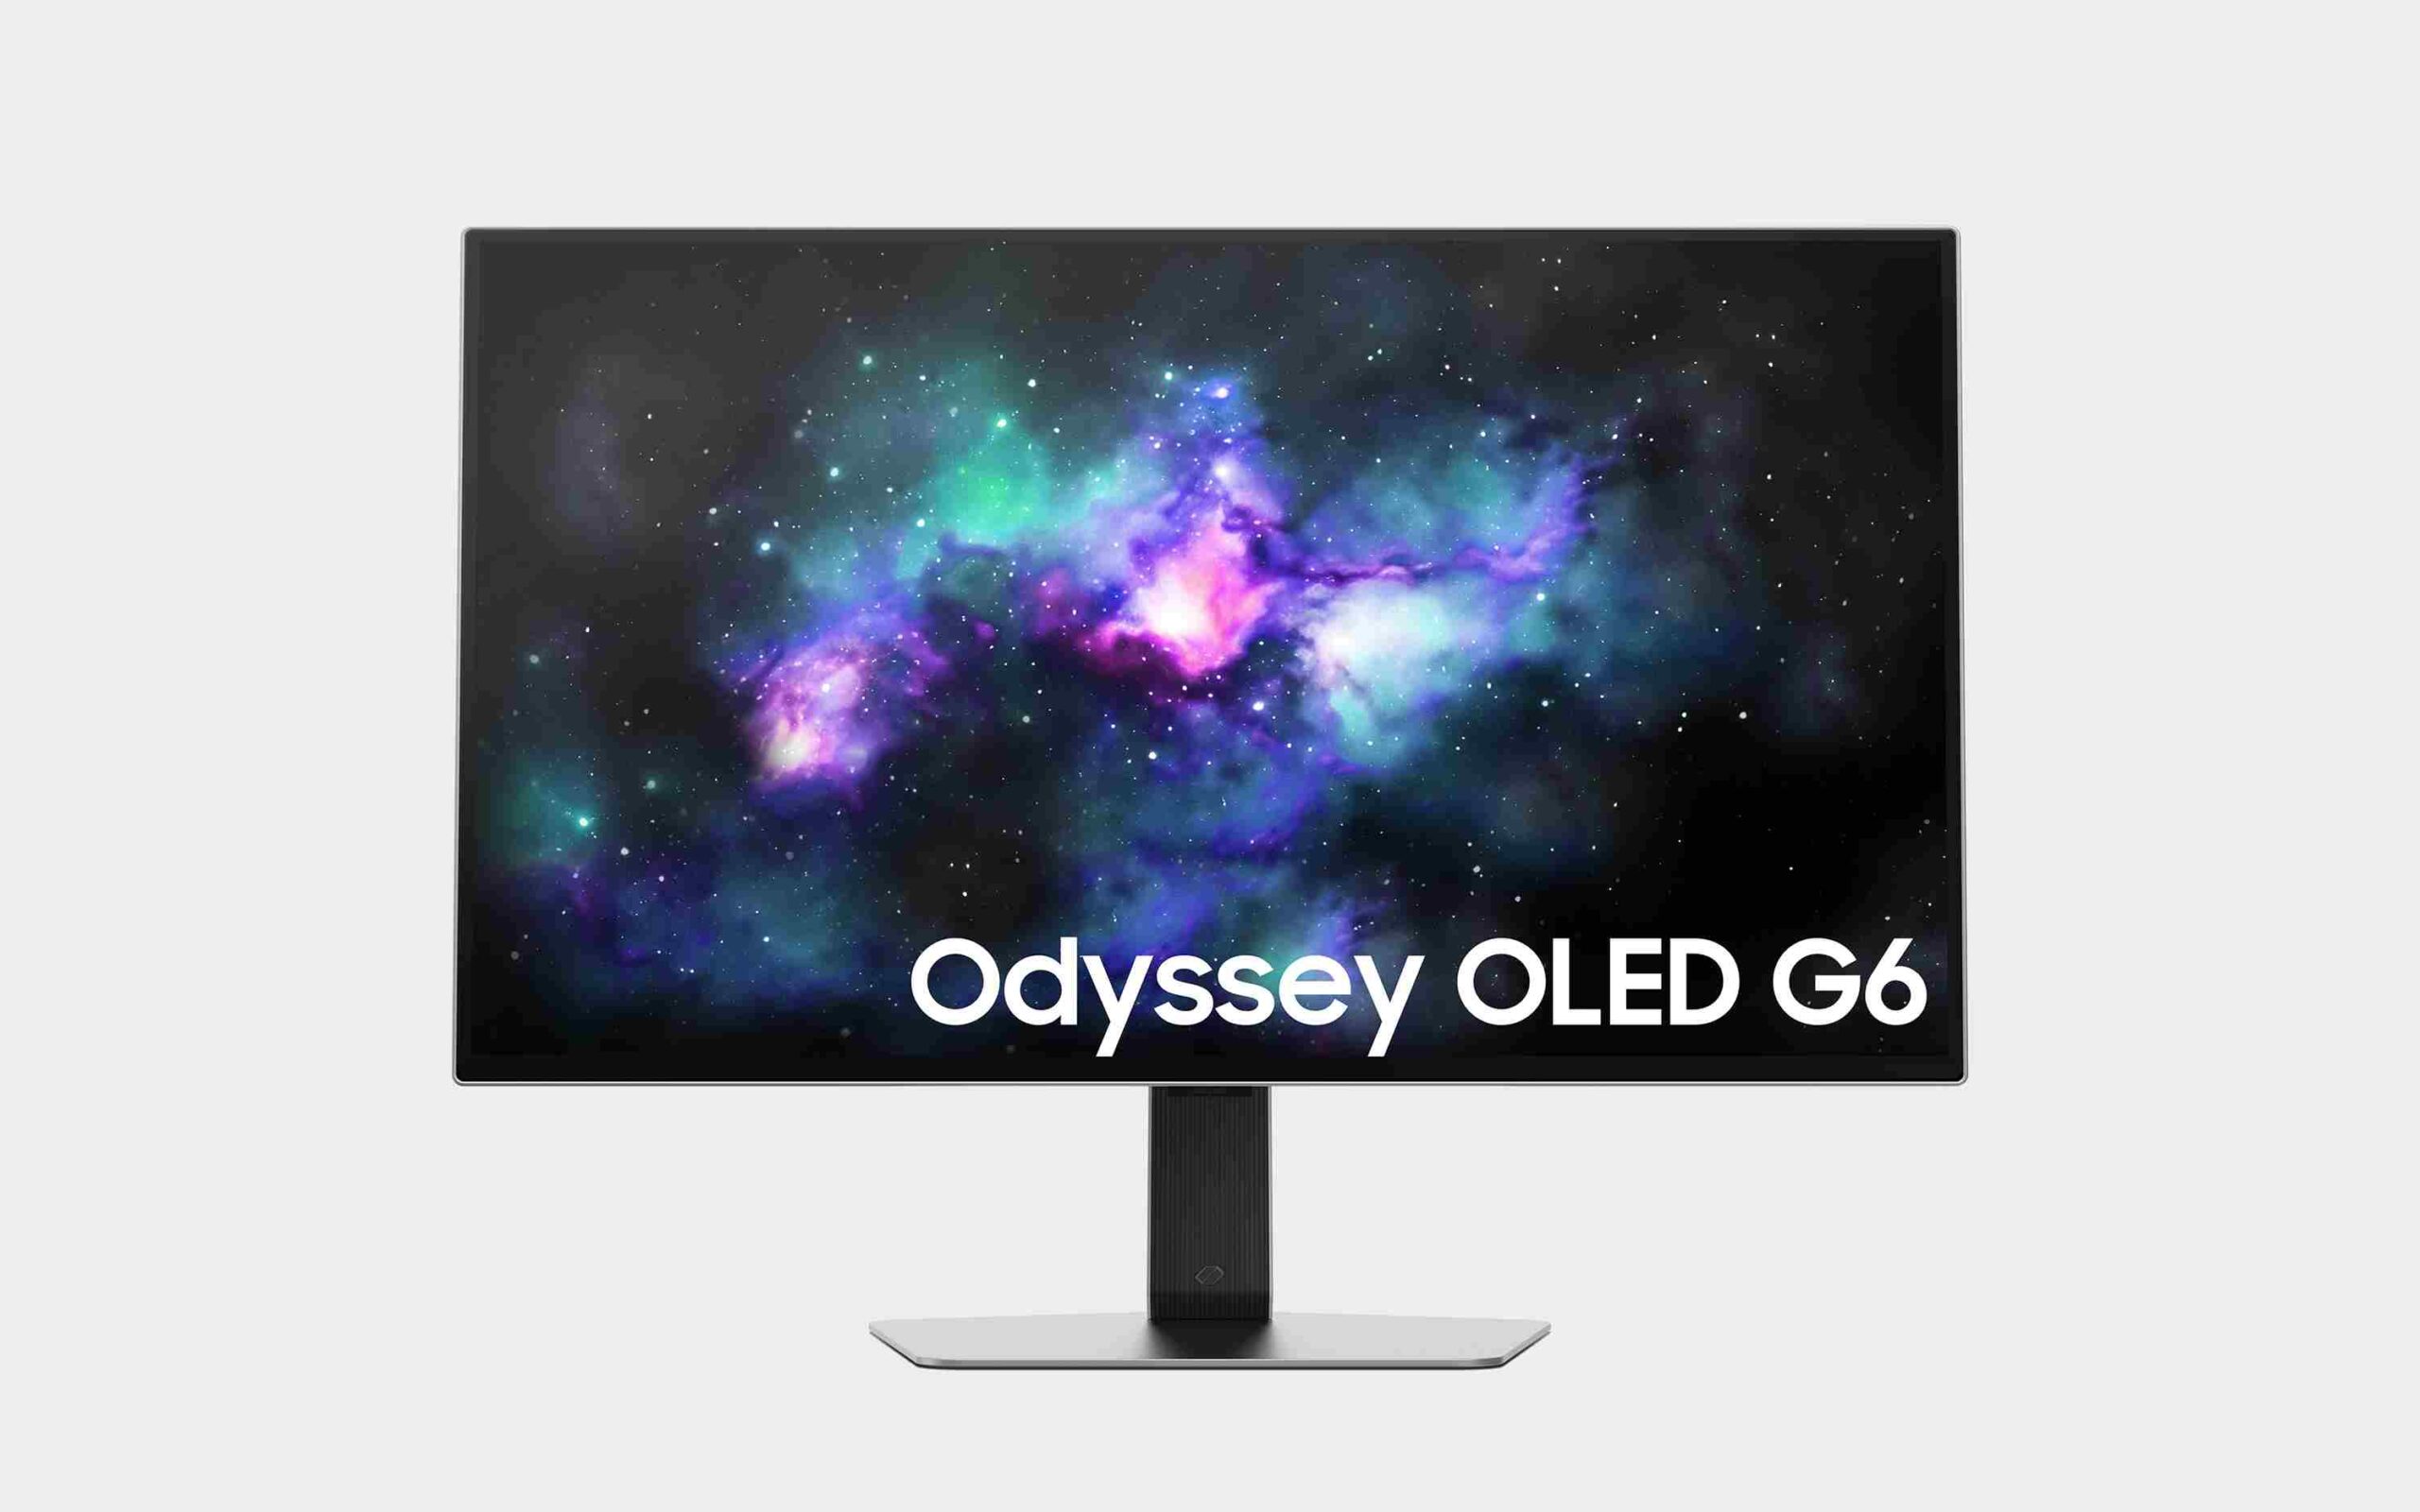 Odyssey OLED G6 G60SD scaled